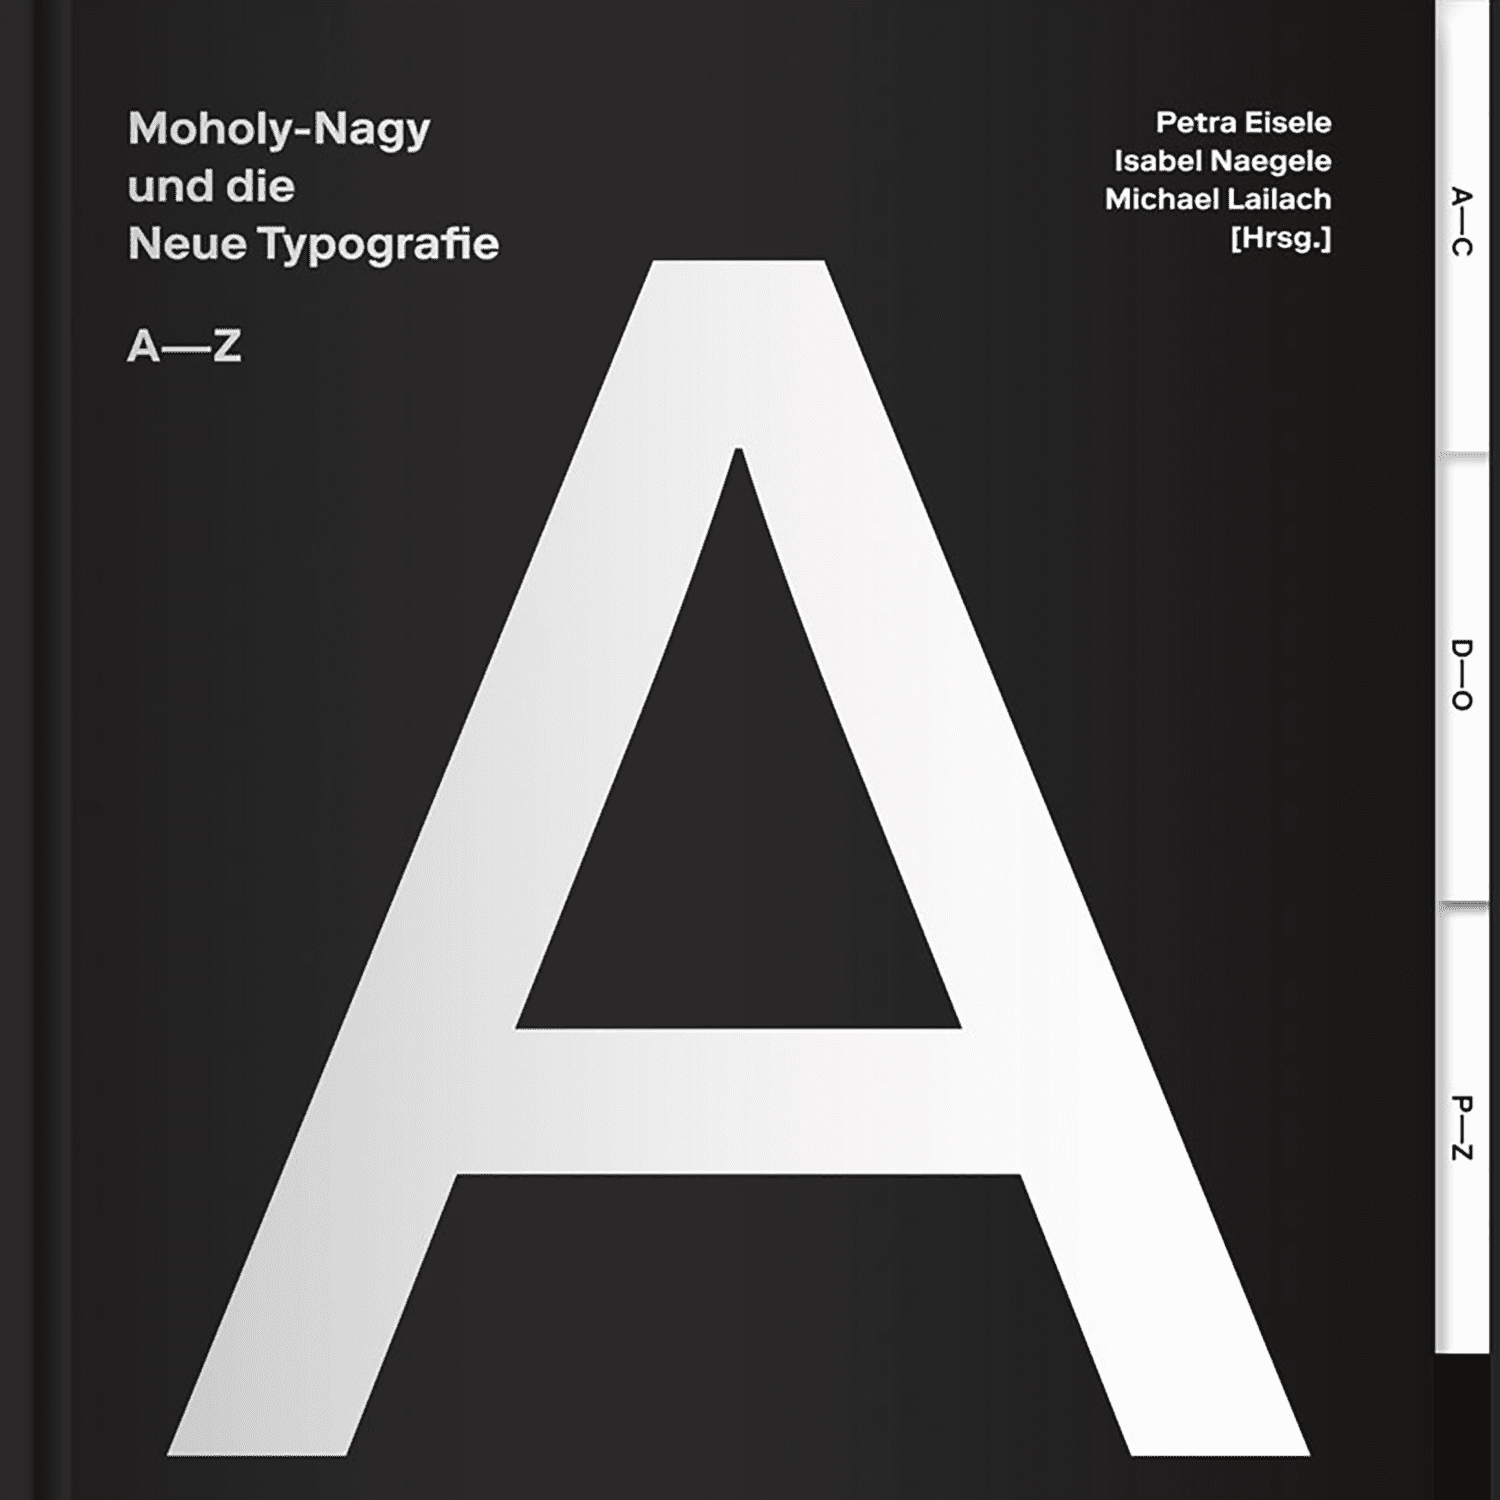 Imagen de Moholy-Nagy y la Nueva Tipografía